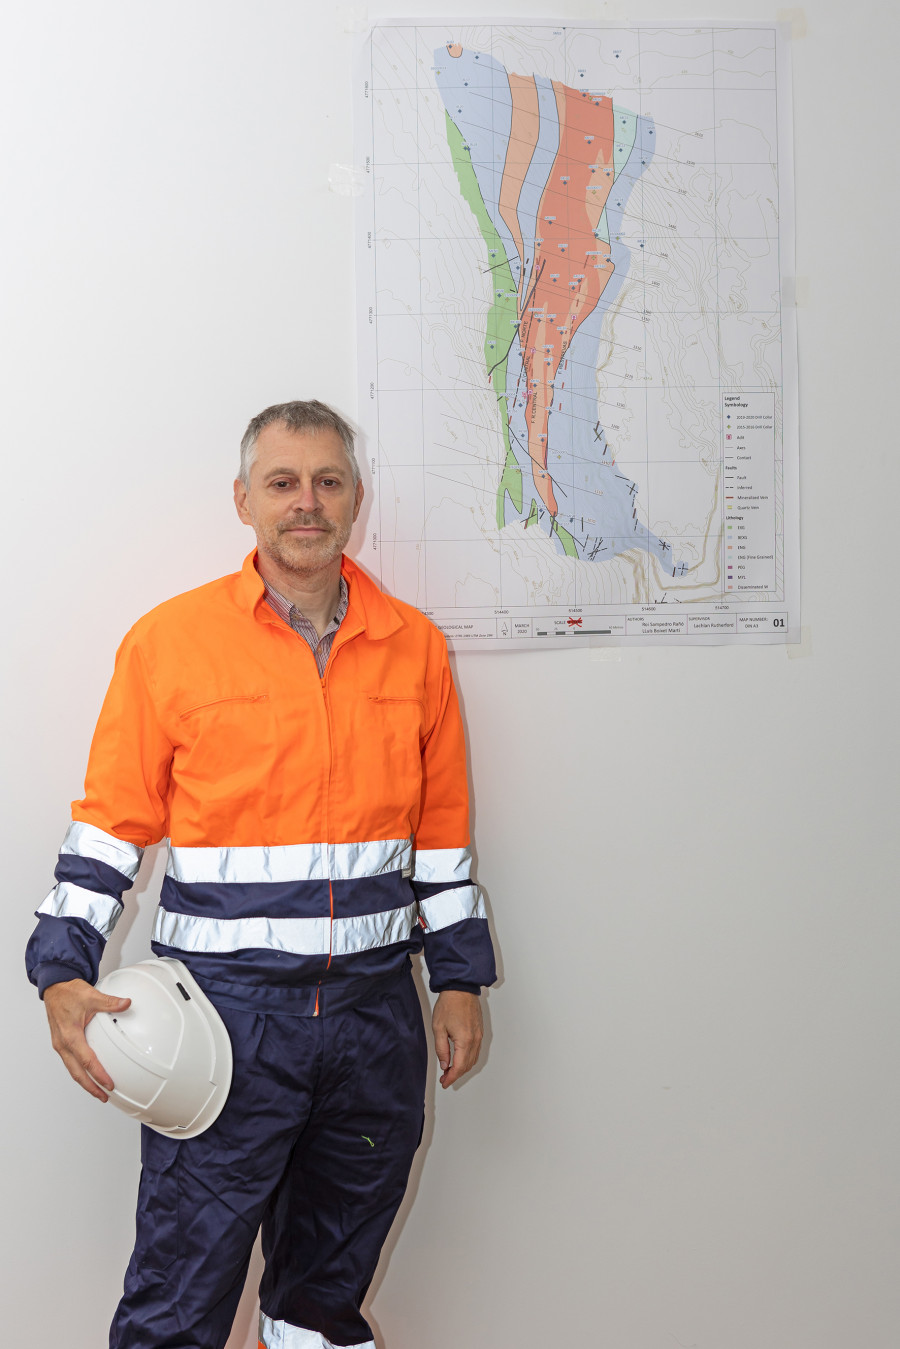 Rafaella Resources destaca el potencial del proyecto de wolframio en la mina de Varilongo